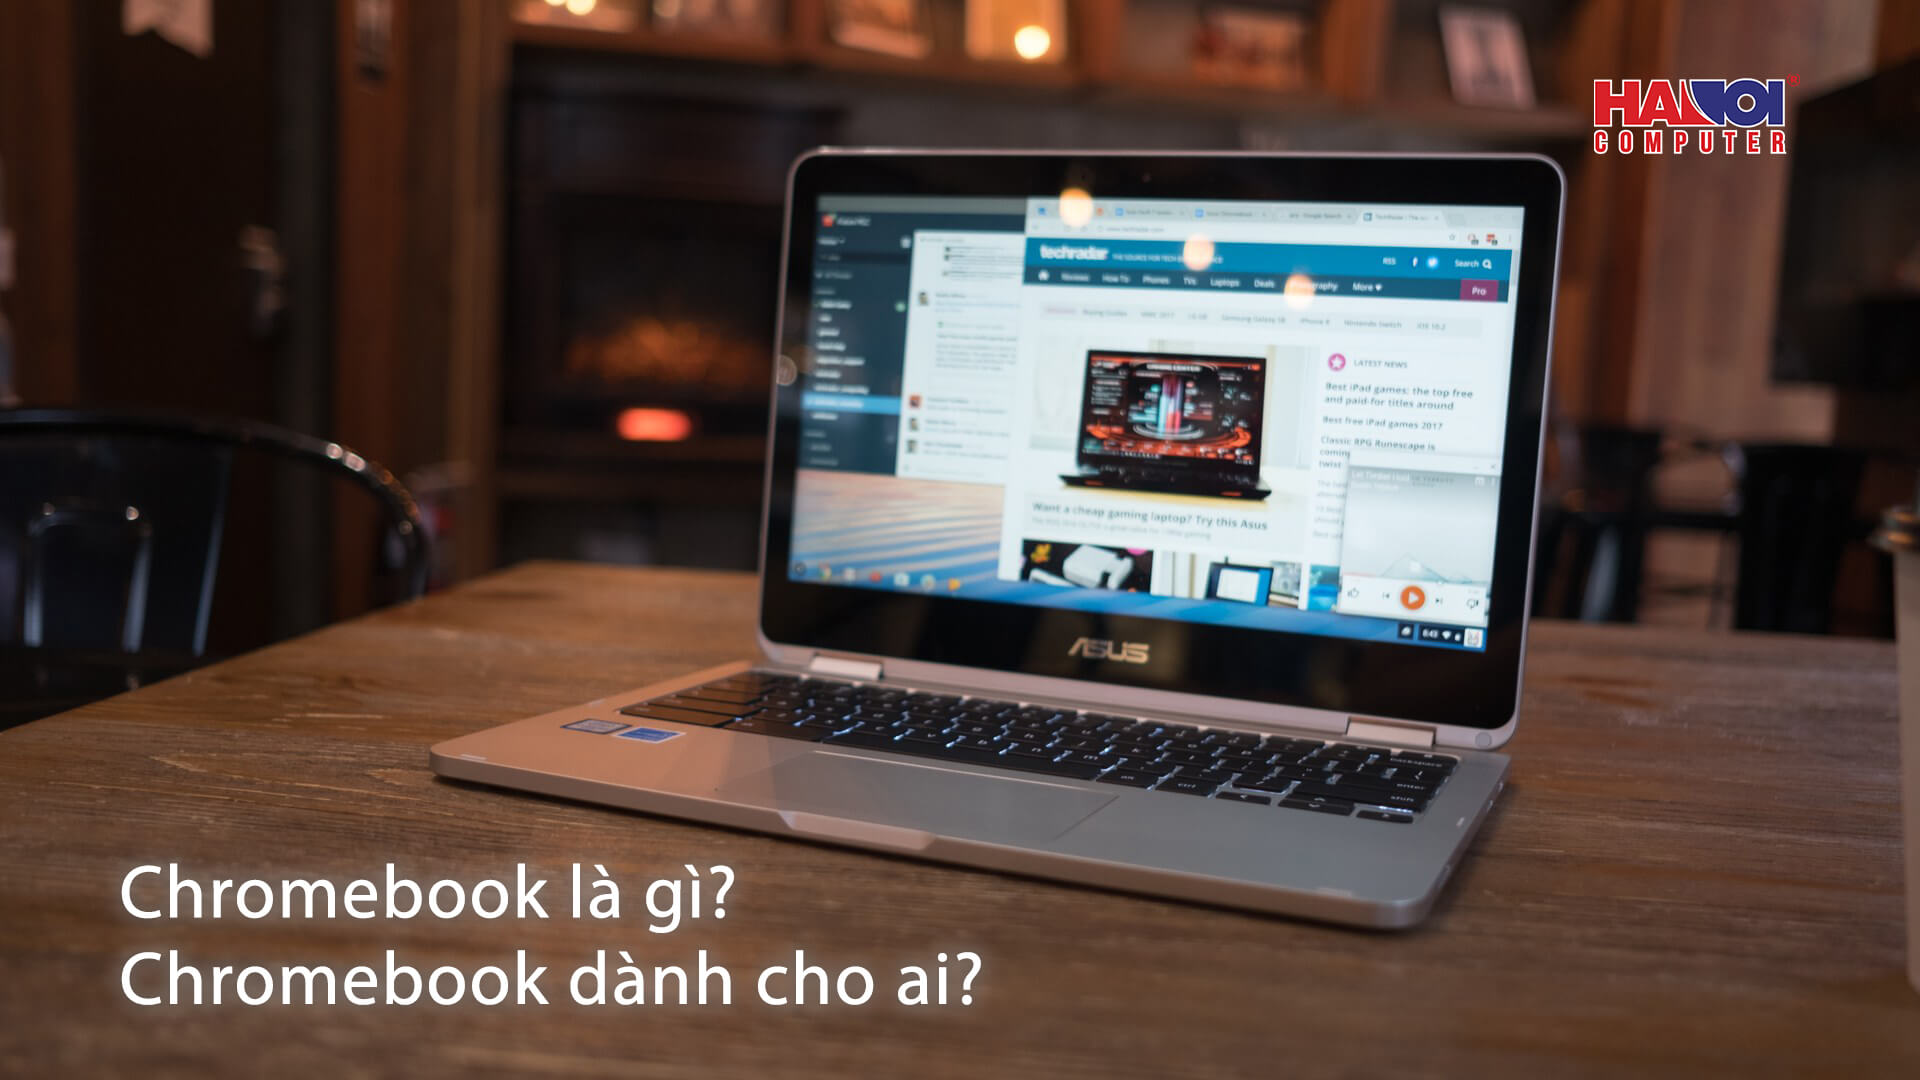 Chromebook là gì? Chromebook dành cho ai?